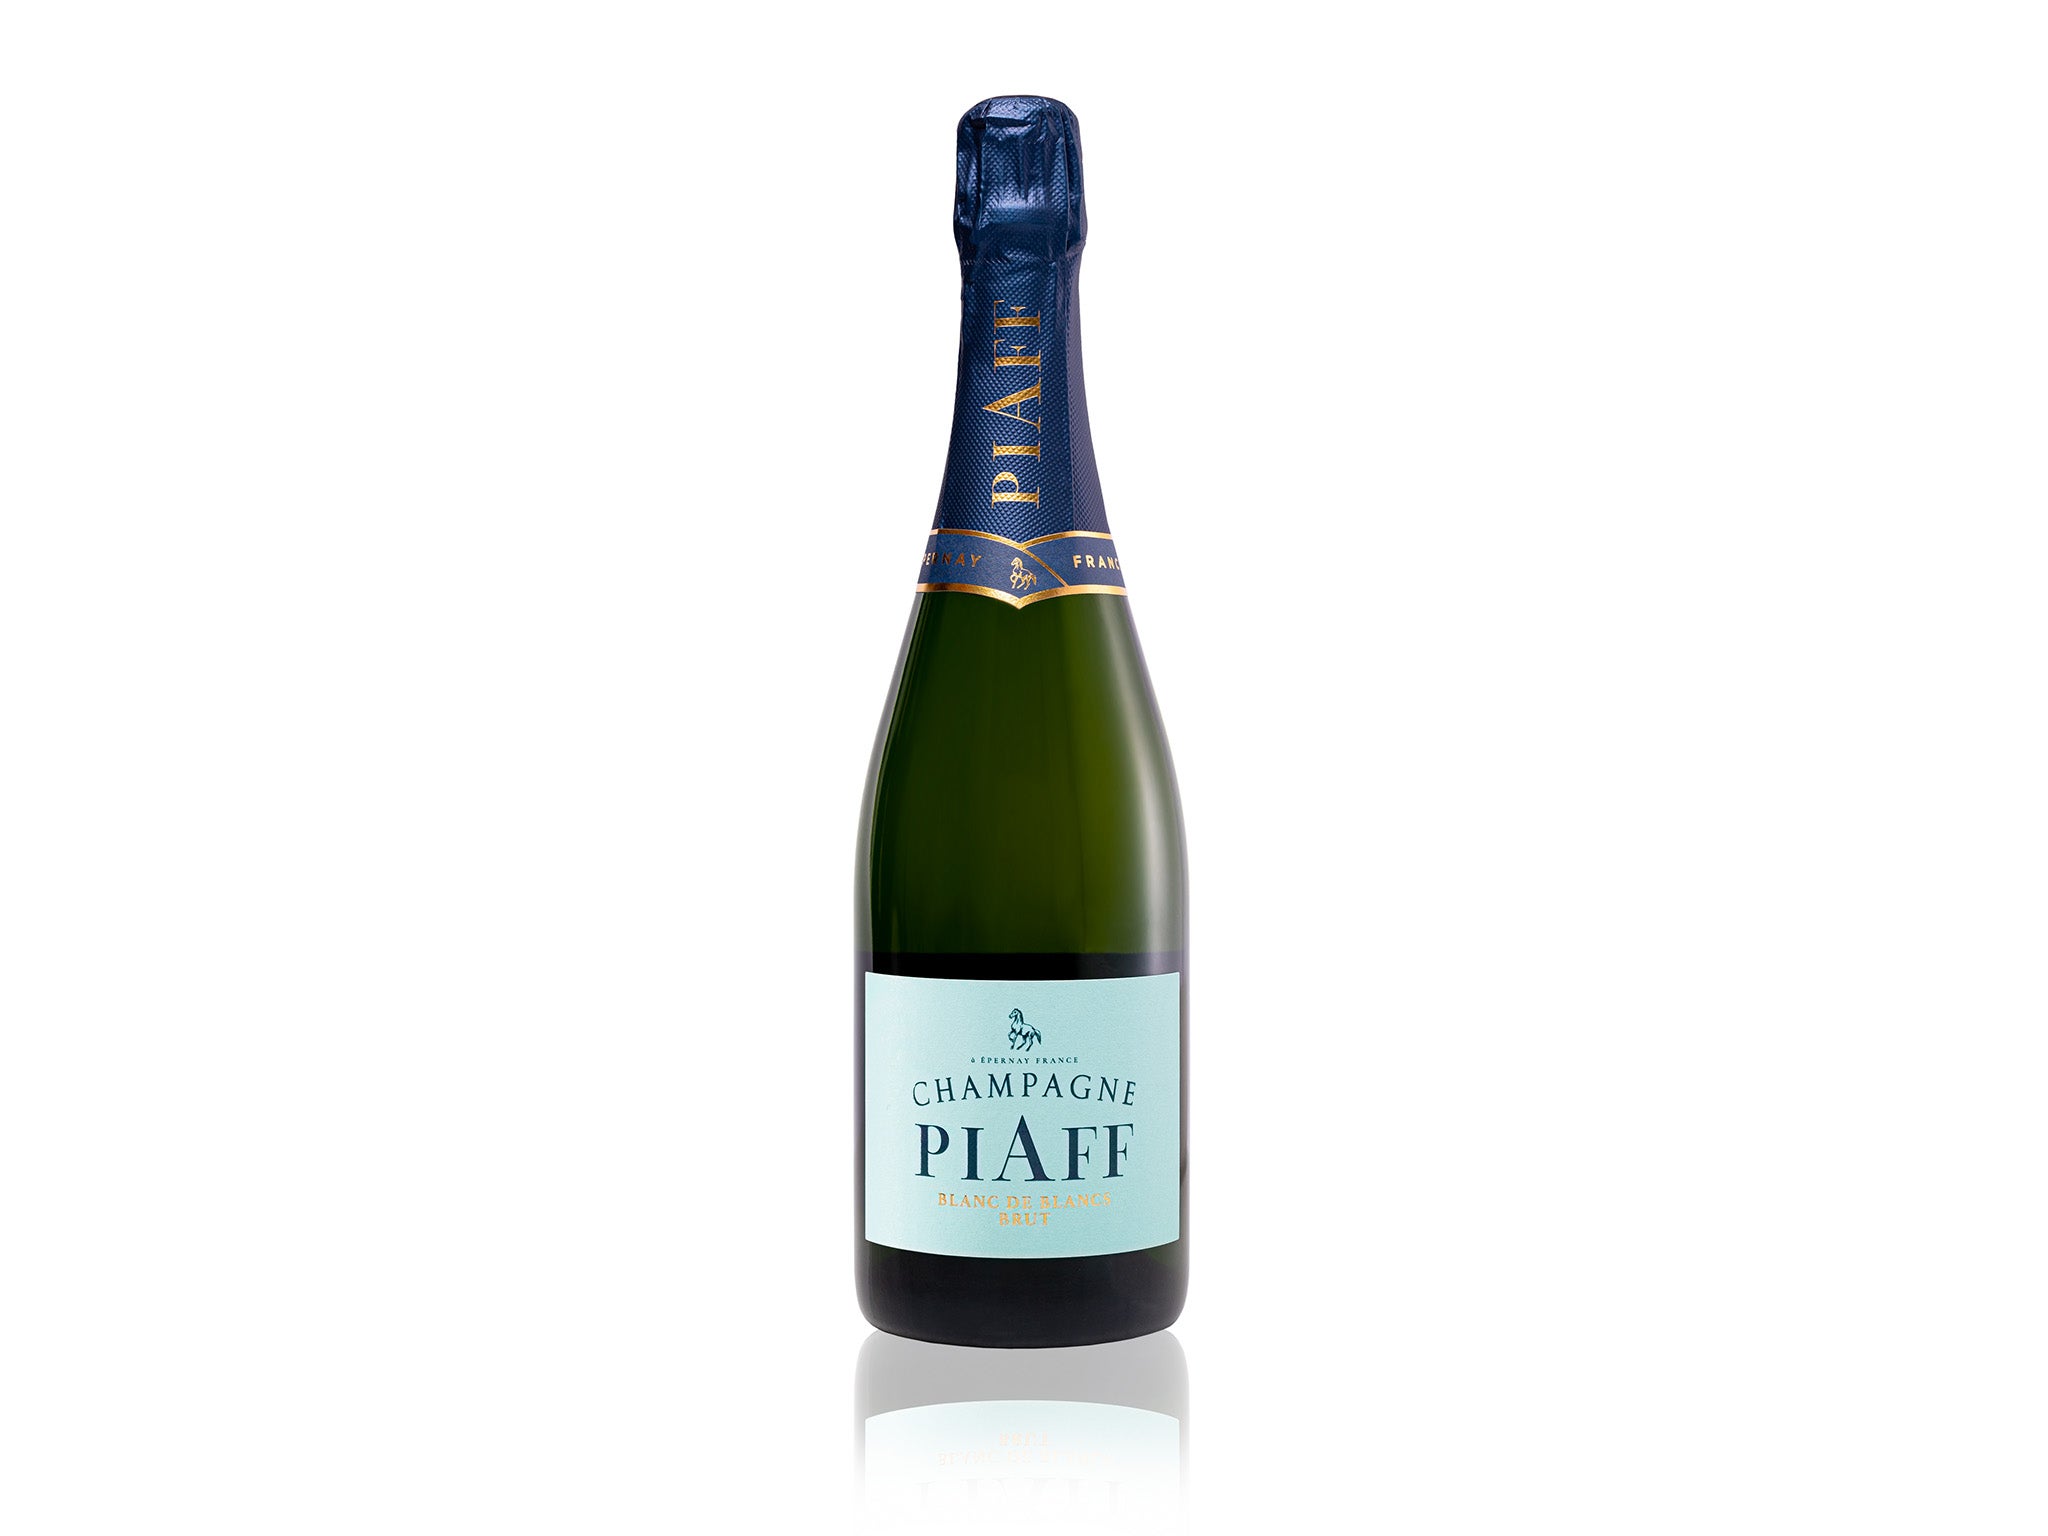 PIAFF blanc de blancs champagne review